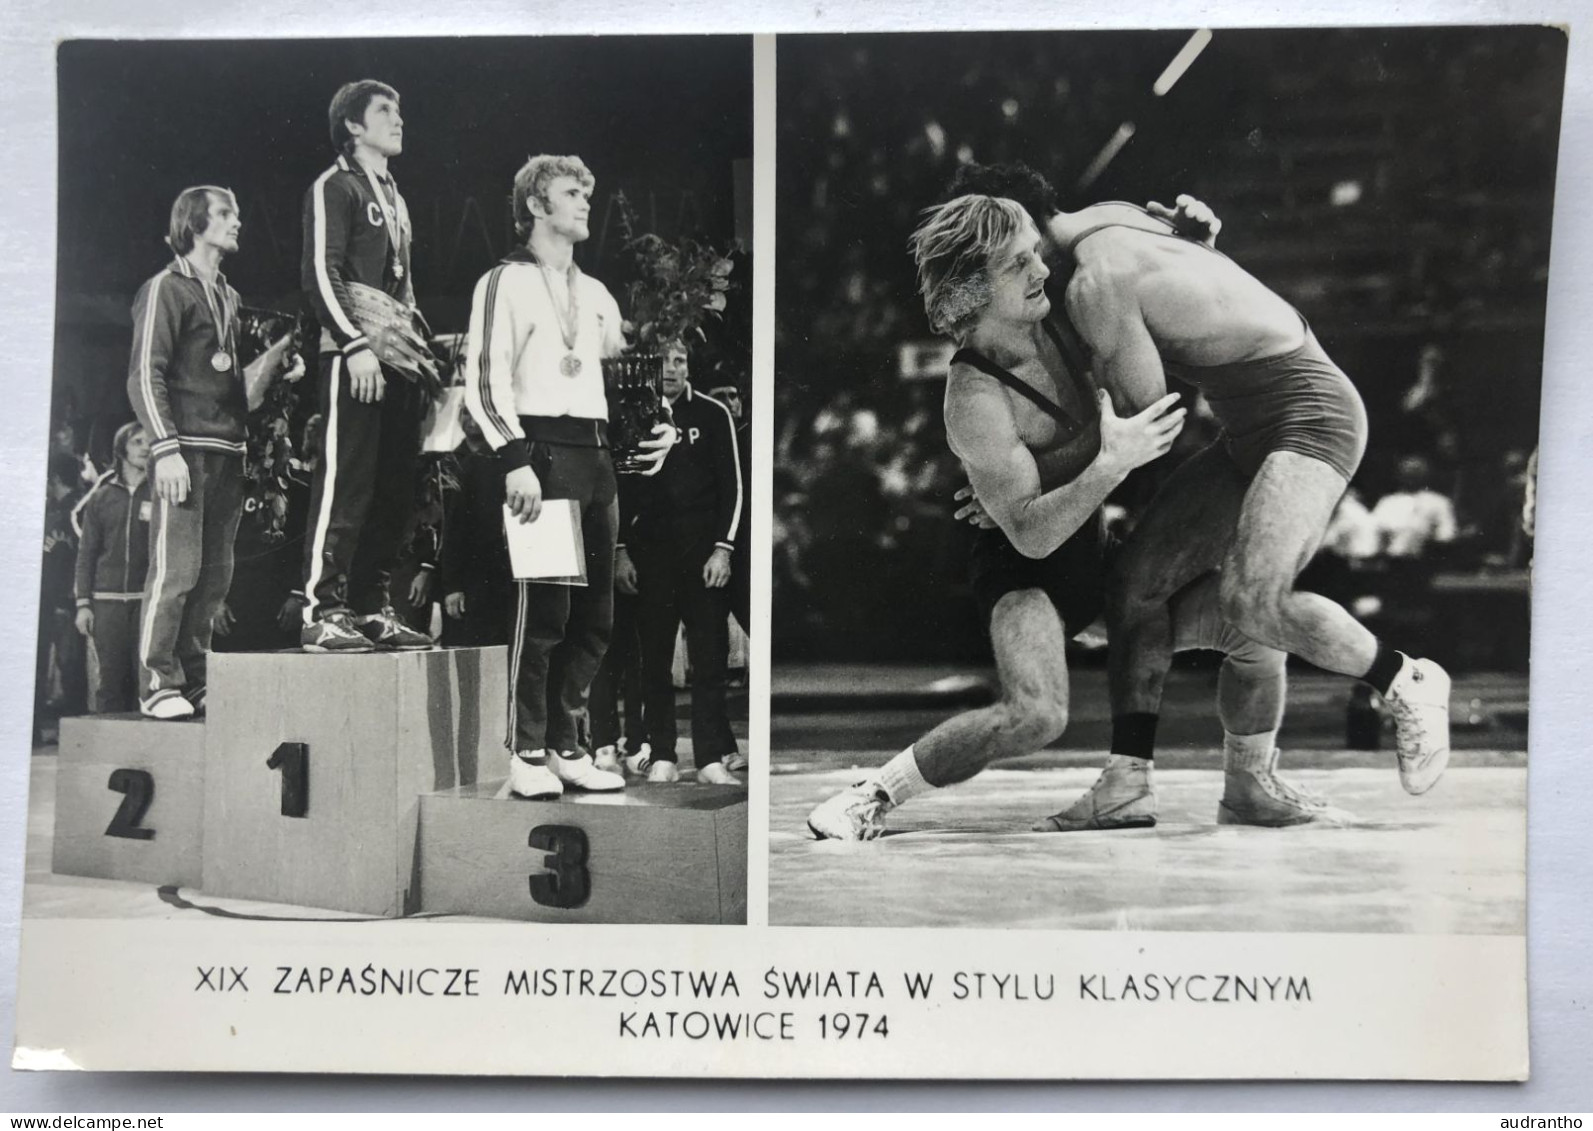 Carte Postale Józef Lipień - Médaillé En Lutte Gréco-romaine - Katowice 1974 - Wrestling